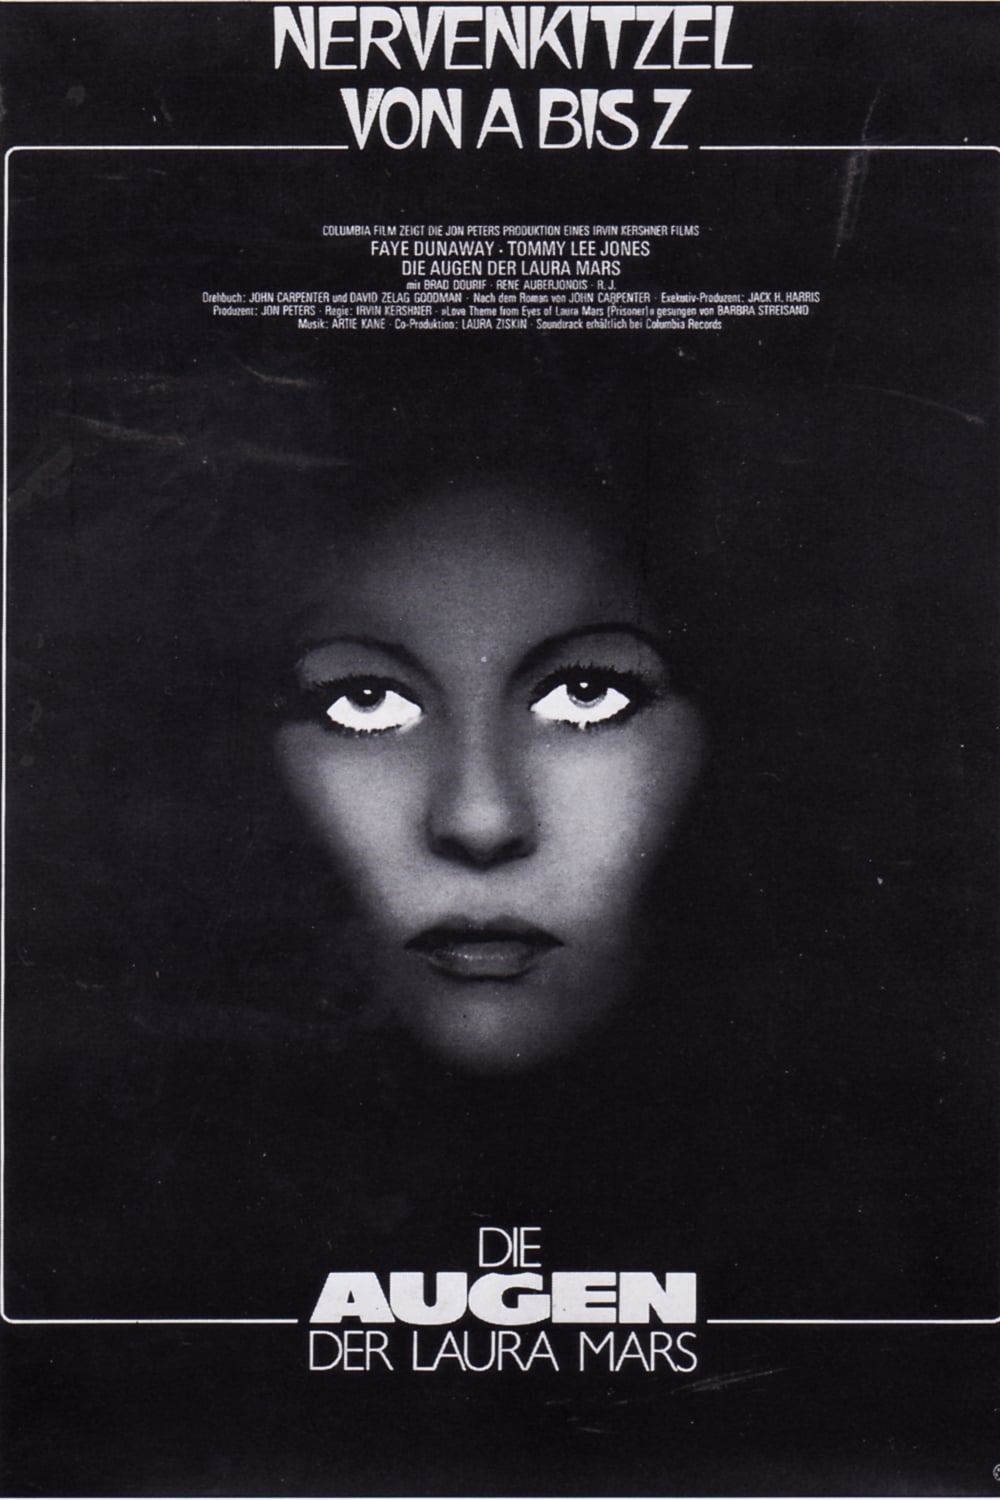 Plakat von "Die Augen der Laura Mars"